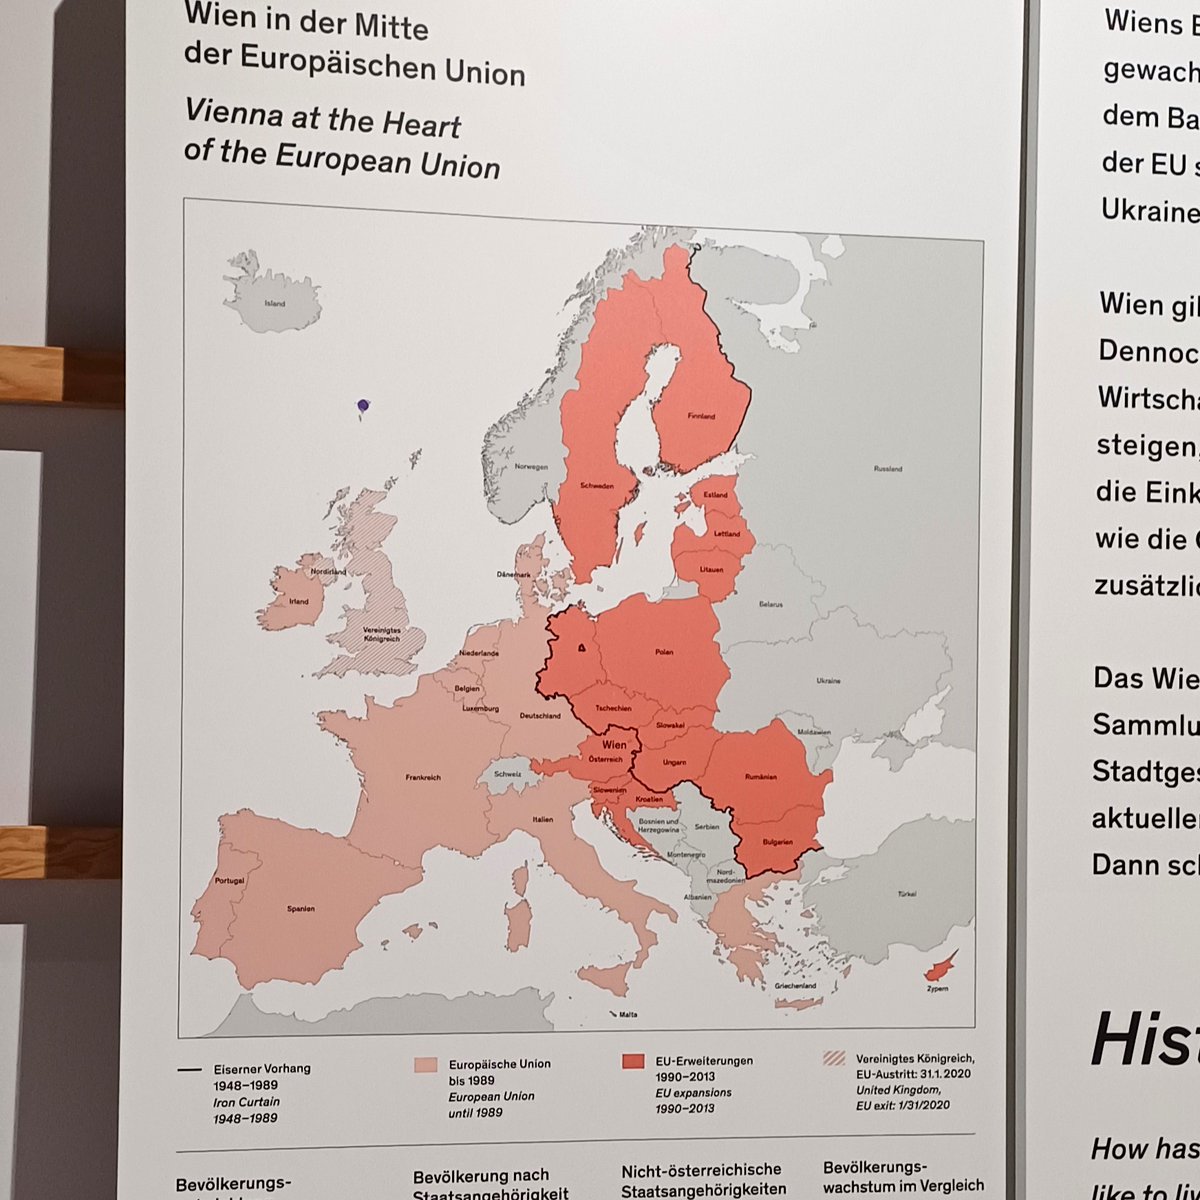 Das dürfte dem #WienMuseum entgangen sein: Österreich hat die Unabhängigkeit der Republik Kosovo am 28. Februar 2008 (vor 16 Jahren !!!) anerkannt. Warum hängt im (erst neu eröffneten !!!) Wien Museum eine falsche Karte, @Stadt_Wien?